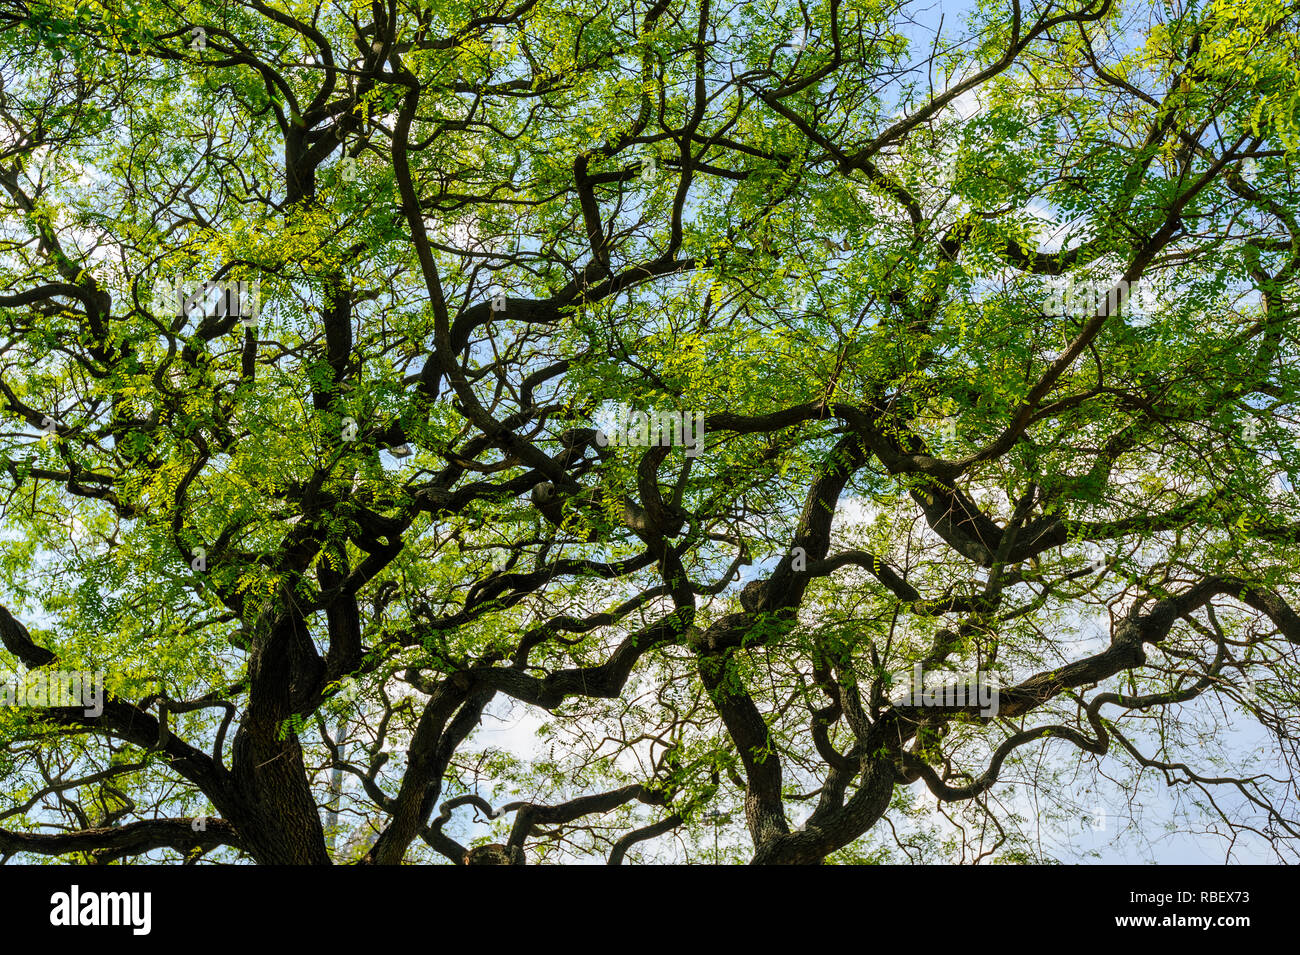 Bellissimo albero corona con serpentina rami e foglie verdi contro un cielo blu. Foto Stock